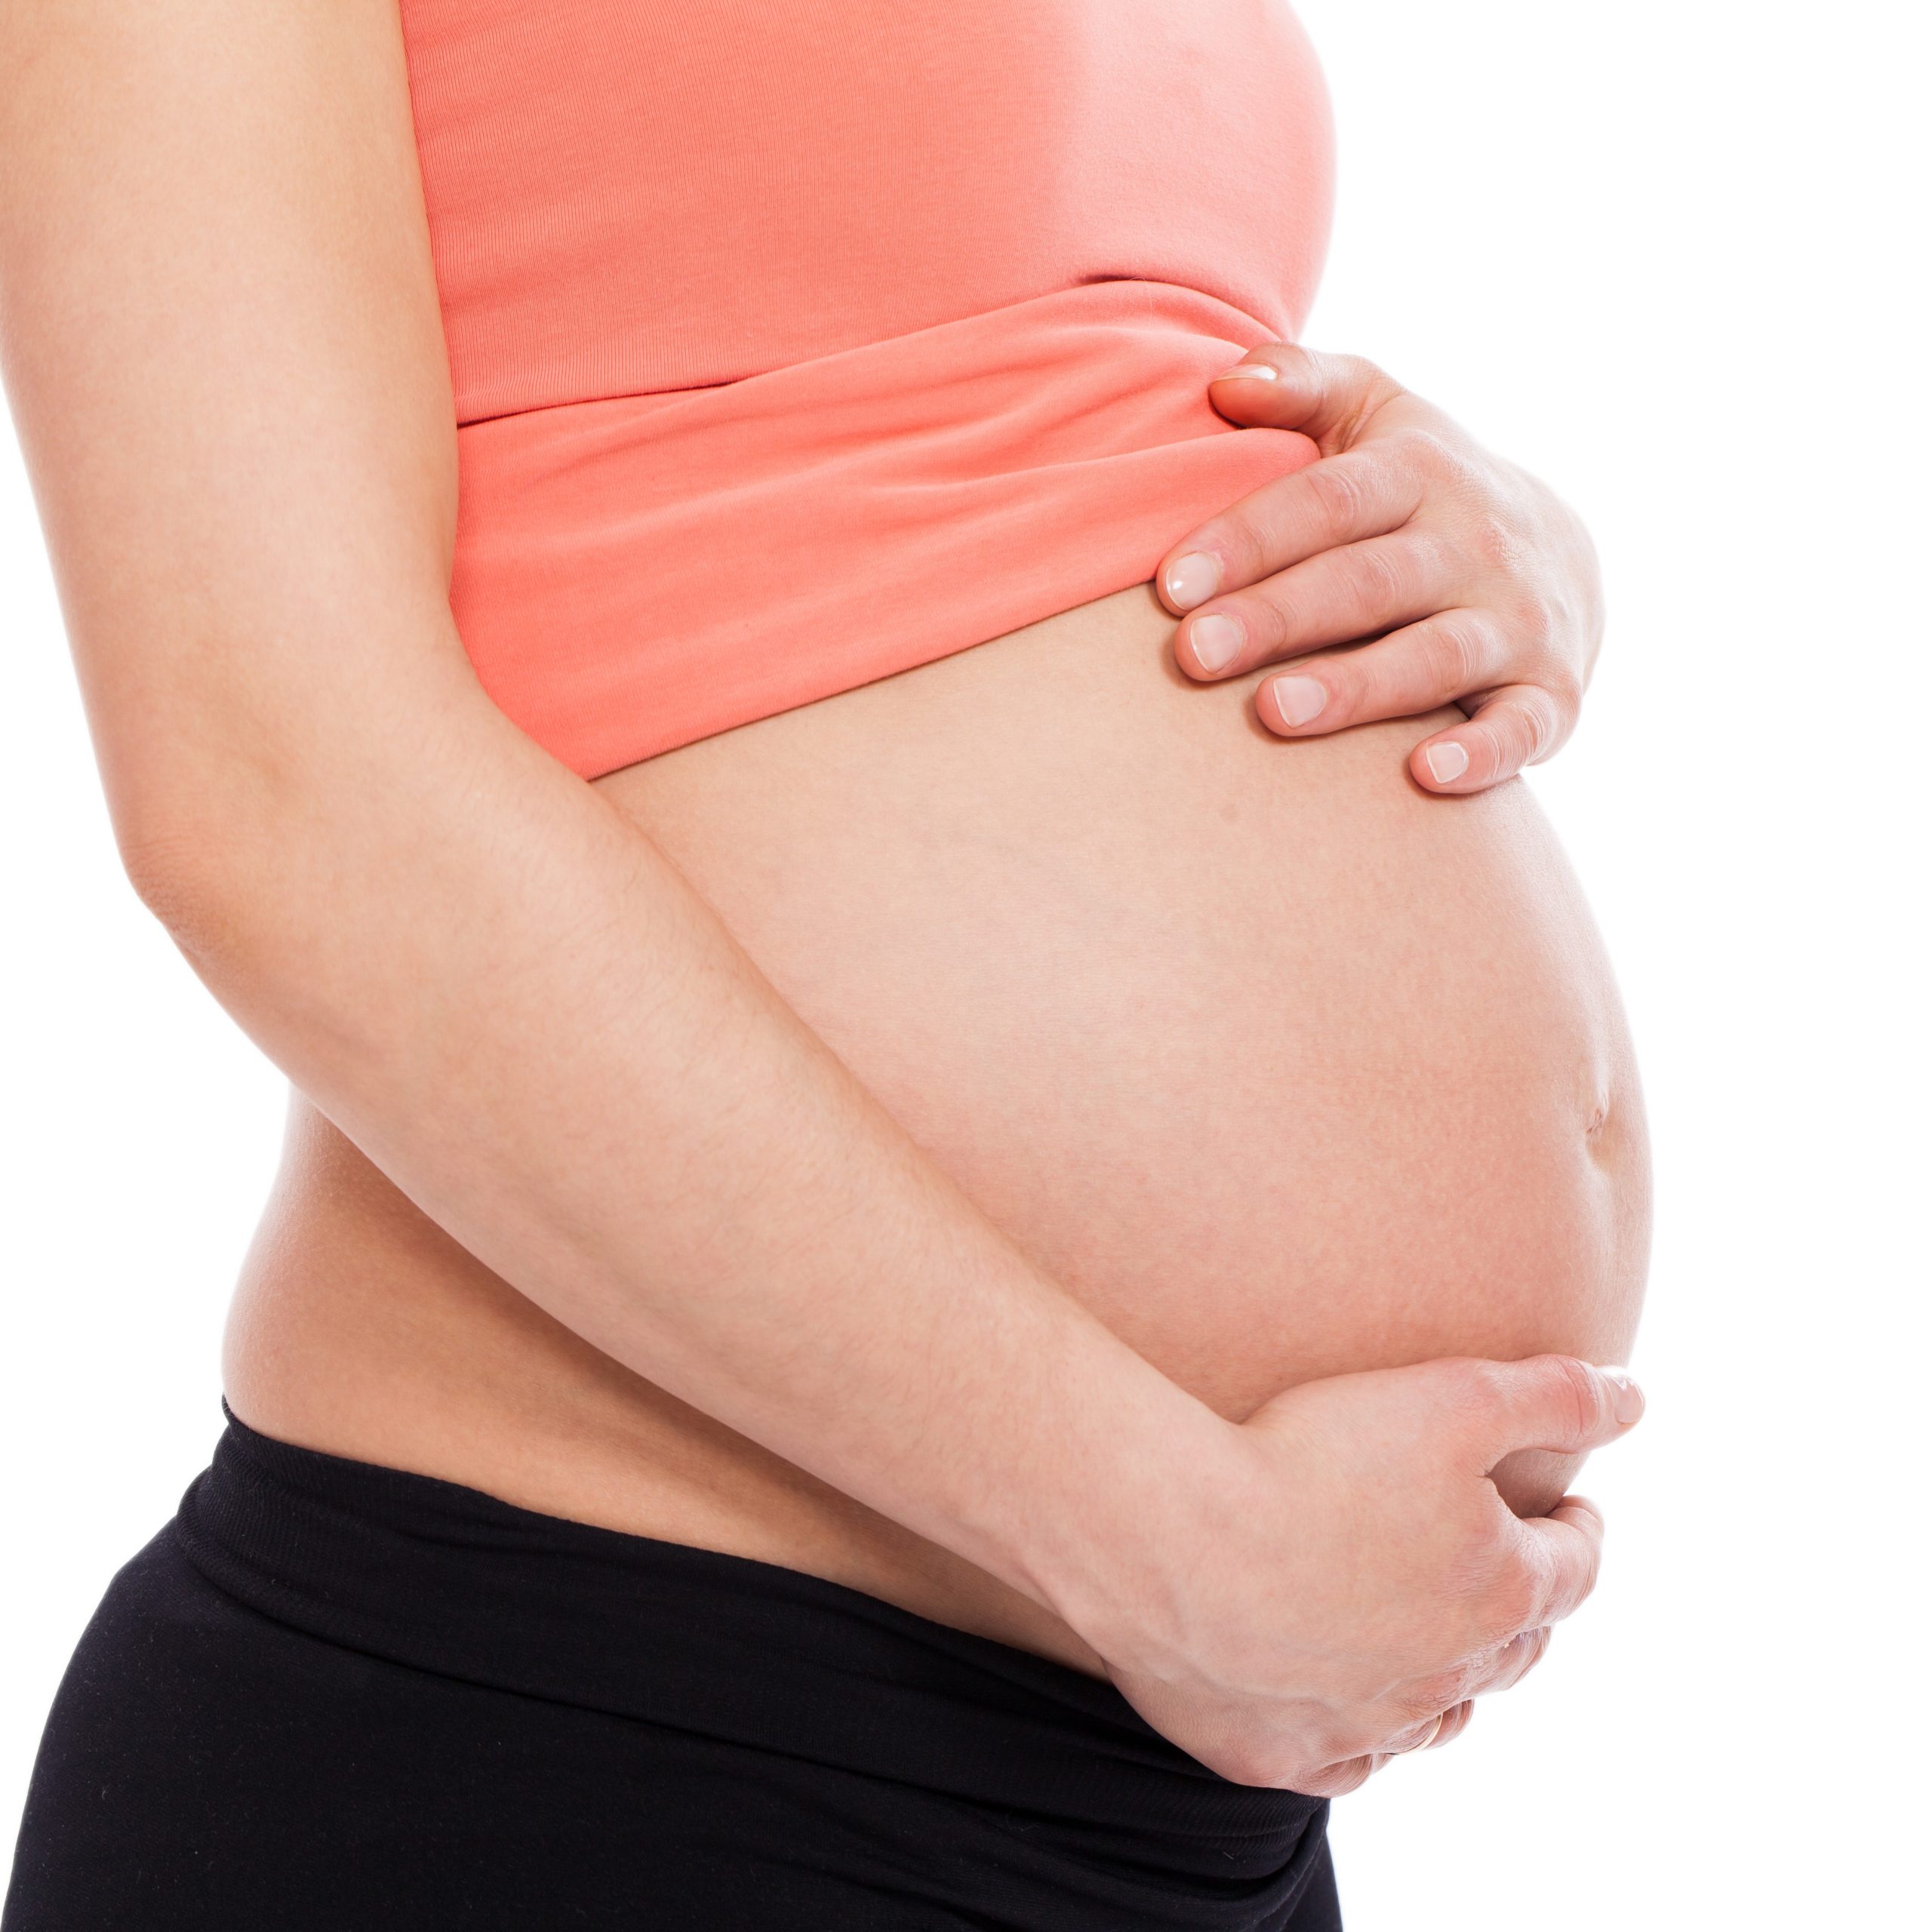 Lee más sobre el artículo Embarazo Activo: Confianza y Salud en Cada Paso